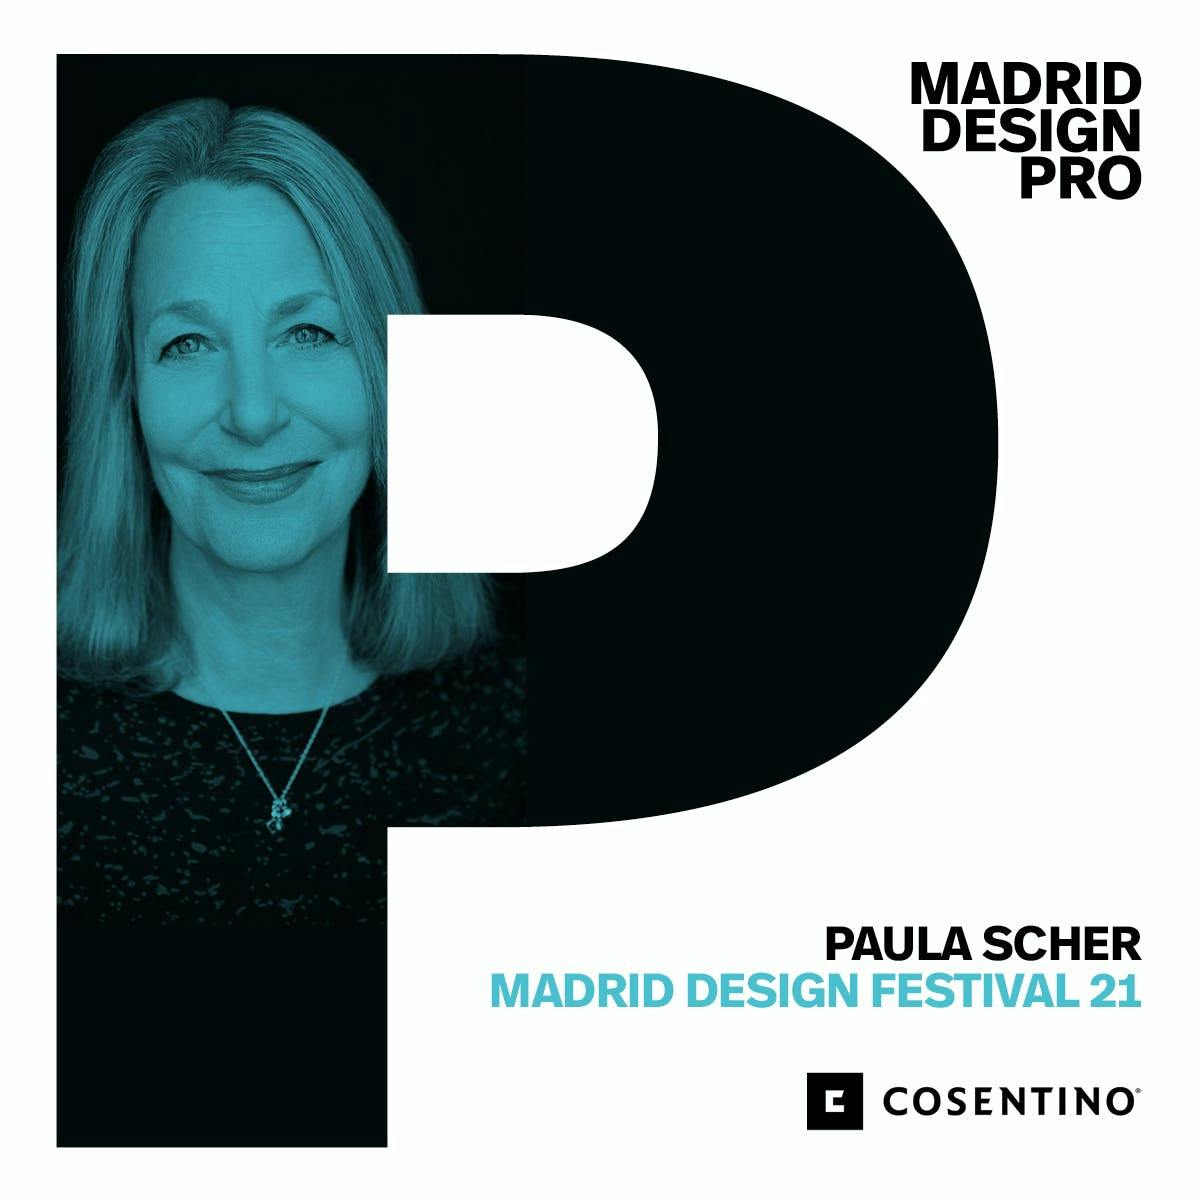 Image 35 of MDPRO COSENTINO 3 in Cosentino at the Madrid Design Festival 2021 - Cosentino